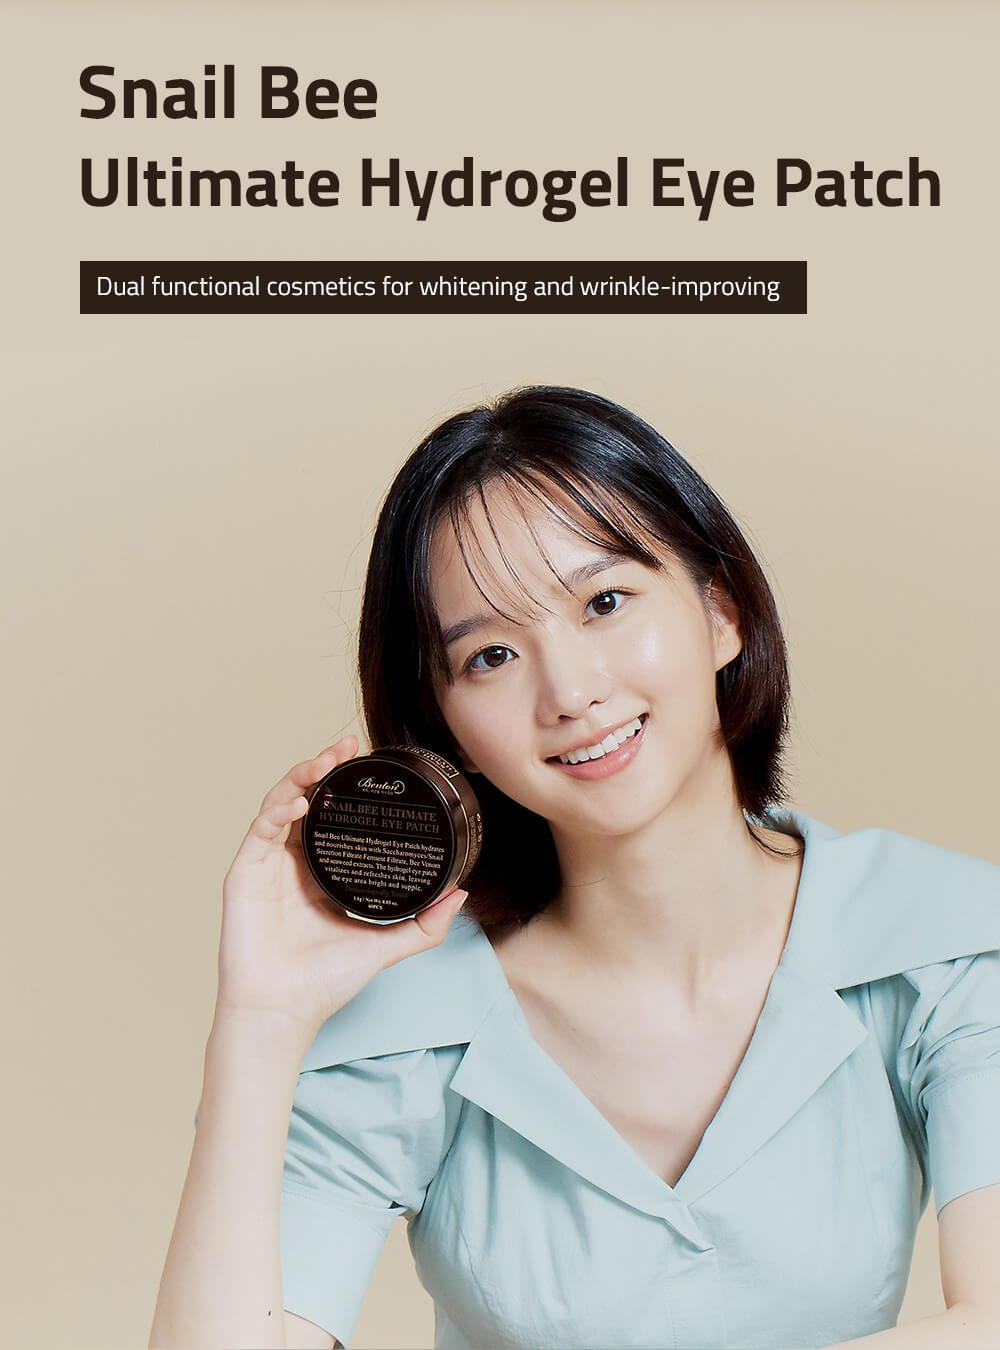 Hydrogel Eye Patch